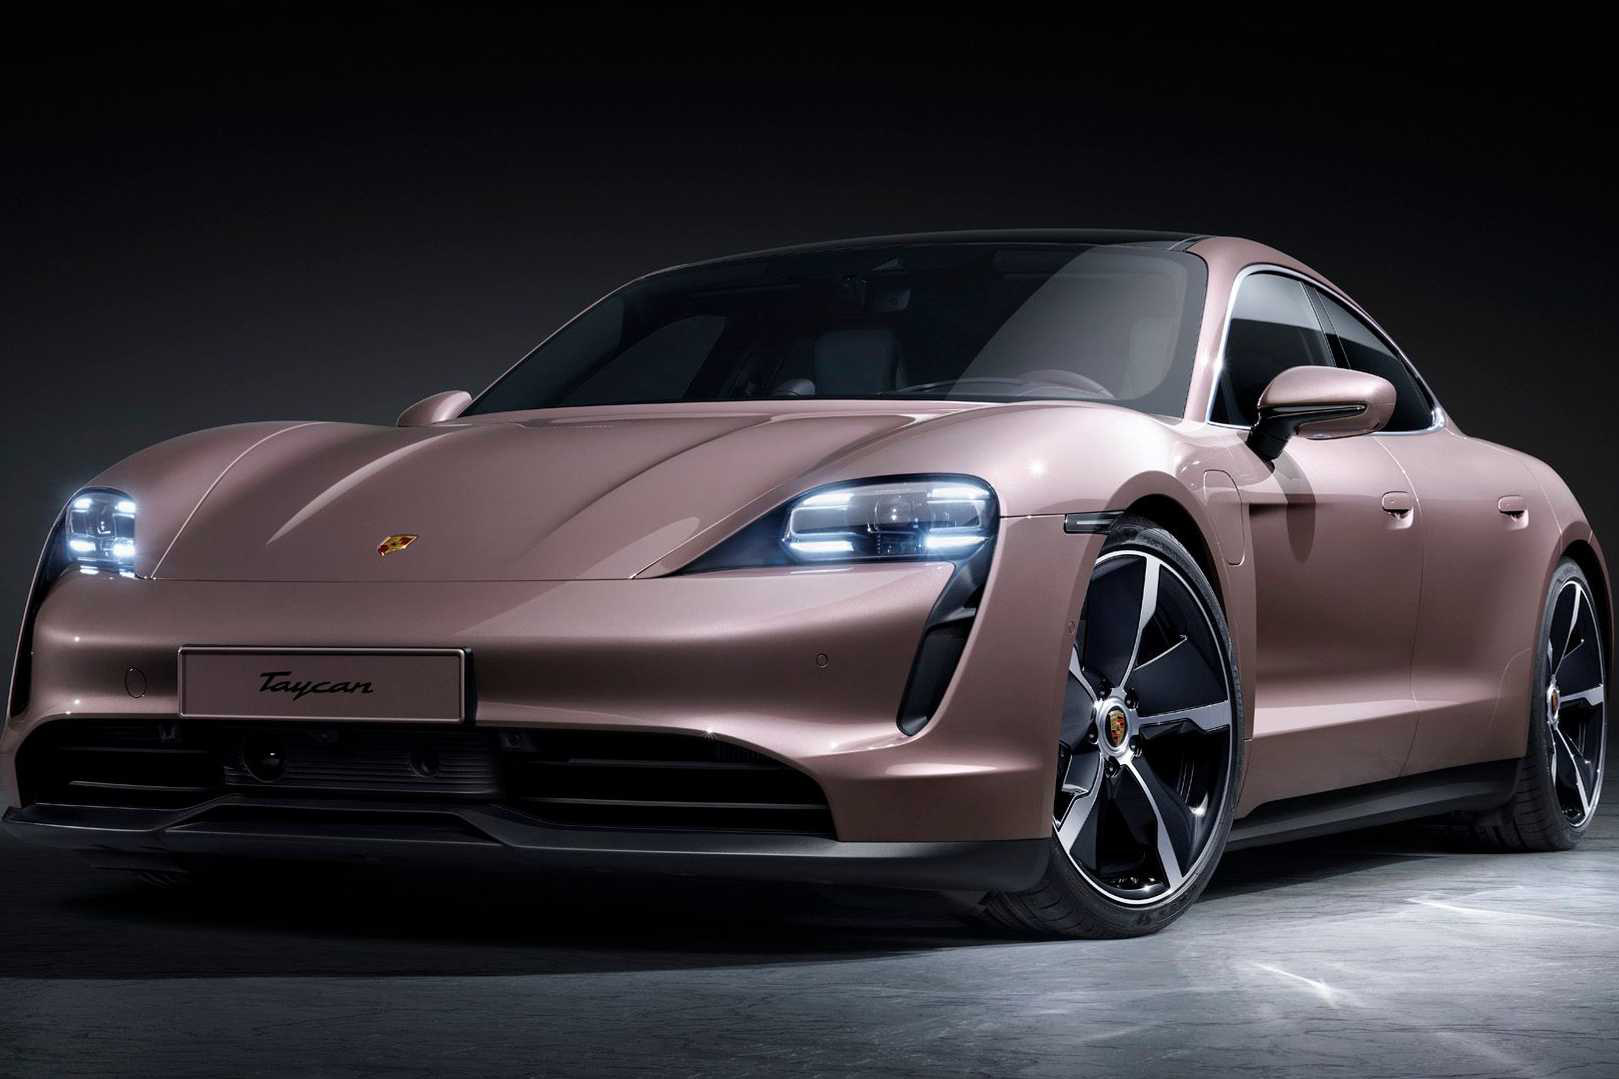 Porsche Taycan công bố bản 'giá rẻ', hạ gần 600 triệu so với bản rẻ nhất trước đây